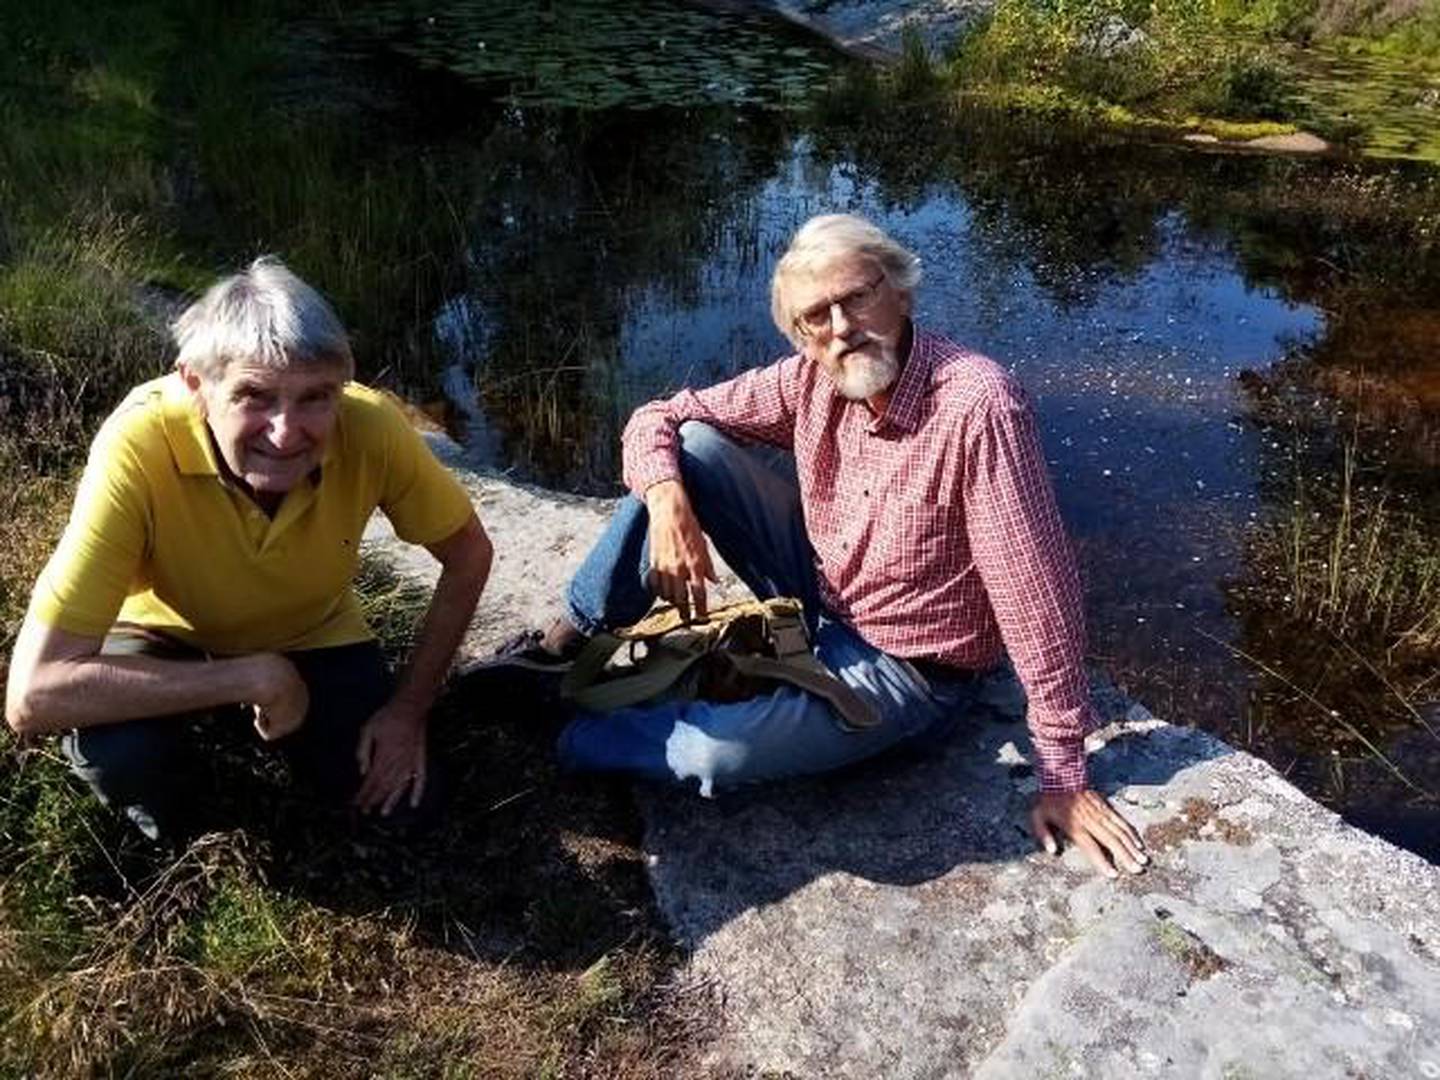 – Å slippe ut 1000 fasaner og rapphøns i Råde, Sarpsborg og Fredrikstad truer bestanden av både reptiler og amfibier, påpeker kulturlandskaps-eier Svein Åstrøm i Torsnes og biolog ved HiØ, Jan-Ingar Båtvik.